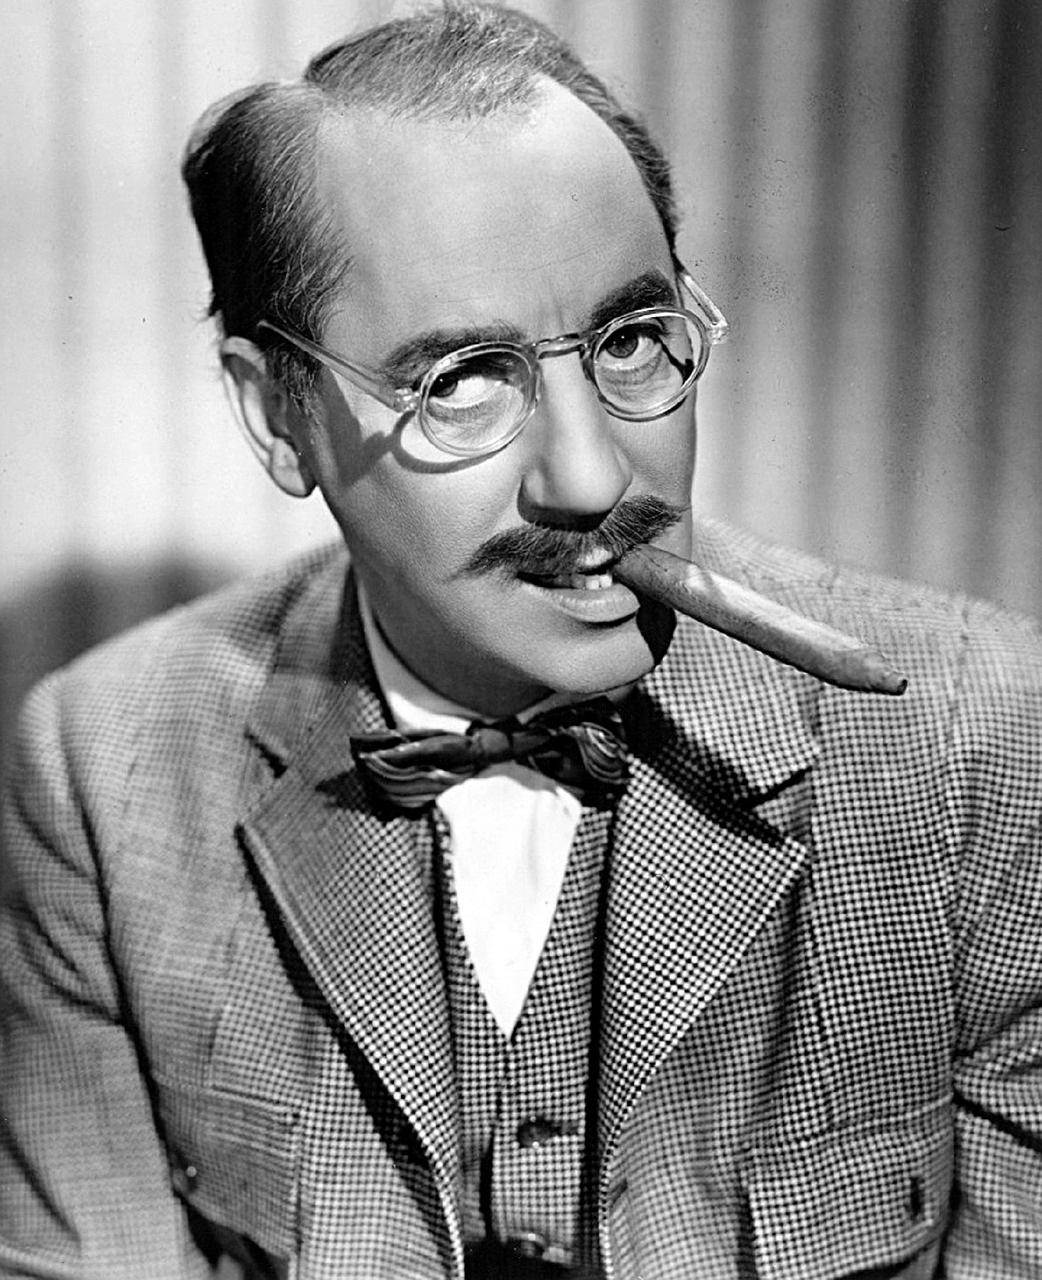 Groucho Marx by Pixabay